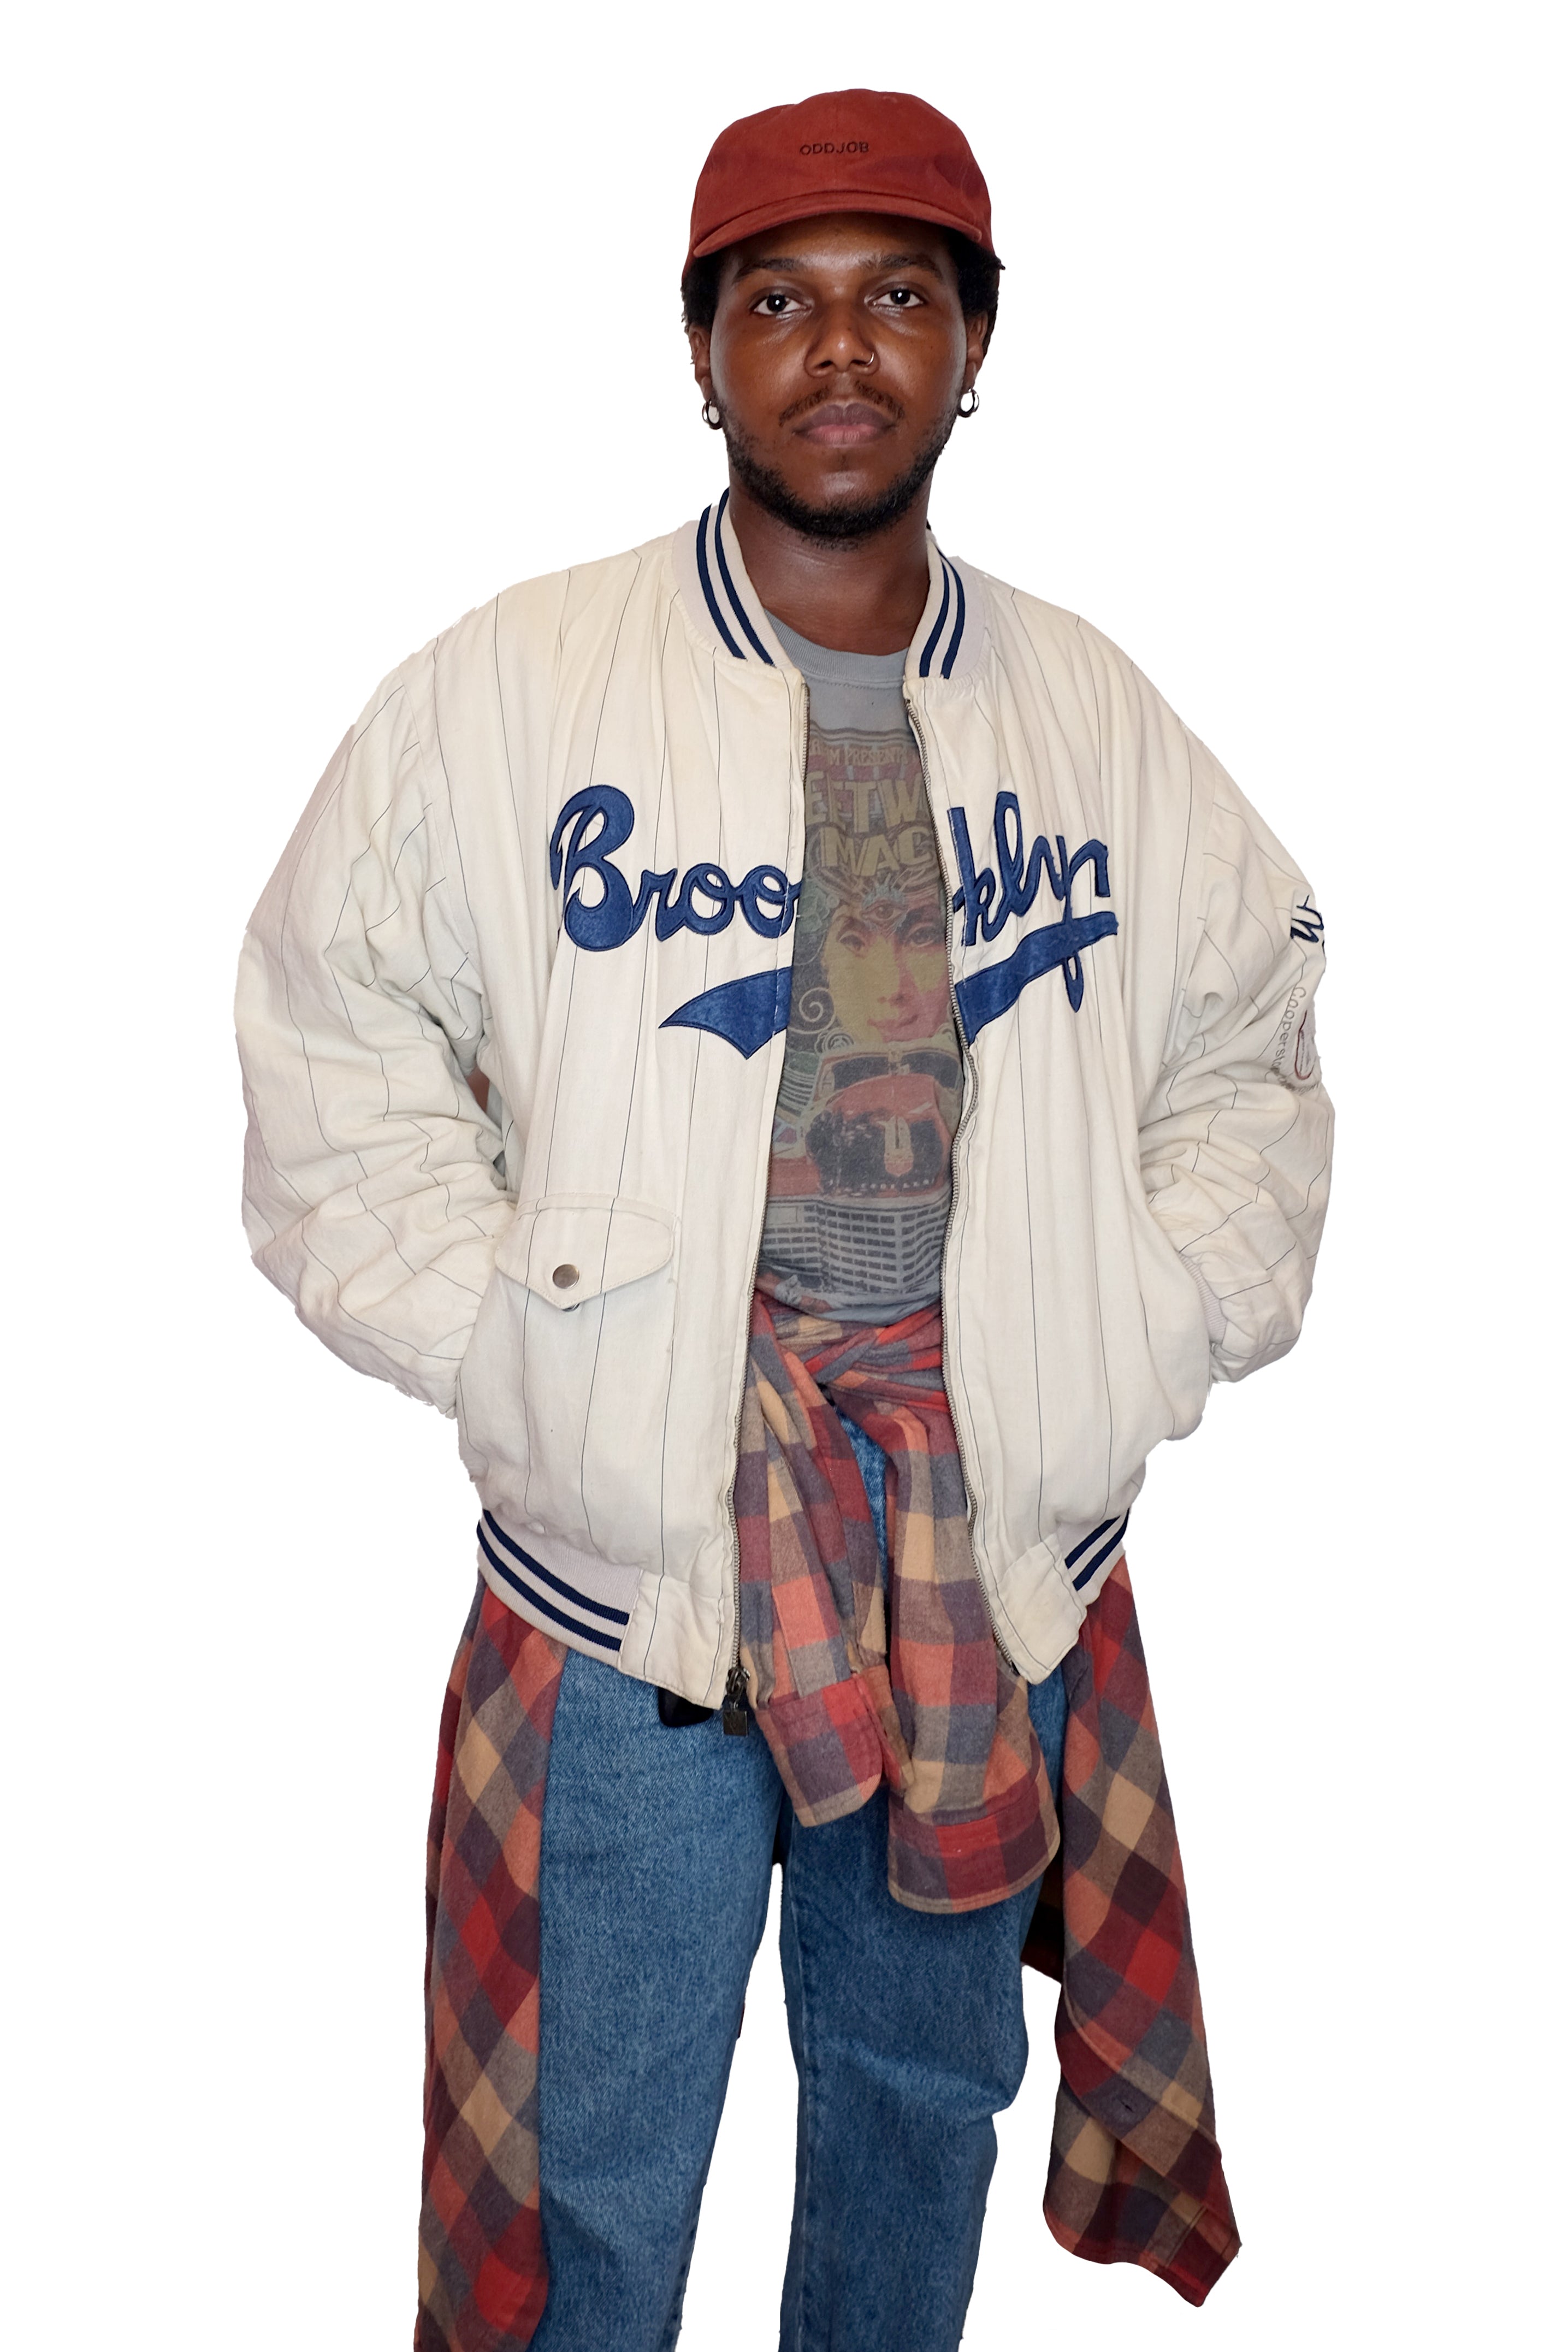 Vintage 1955 Brooklyn Dodgers Varsity Jacket (Variant A)